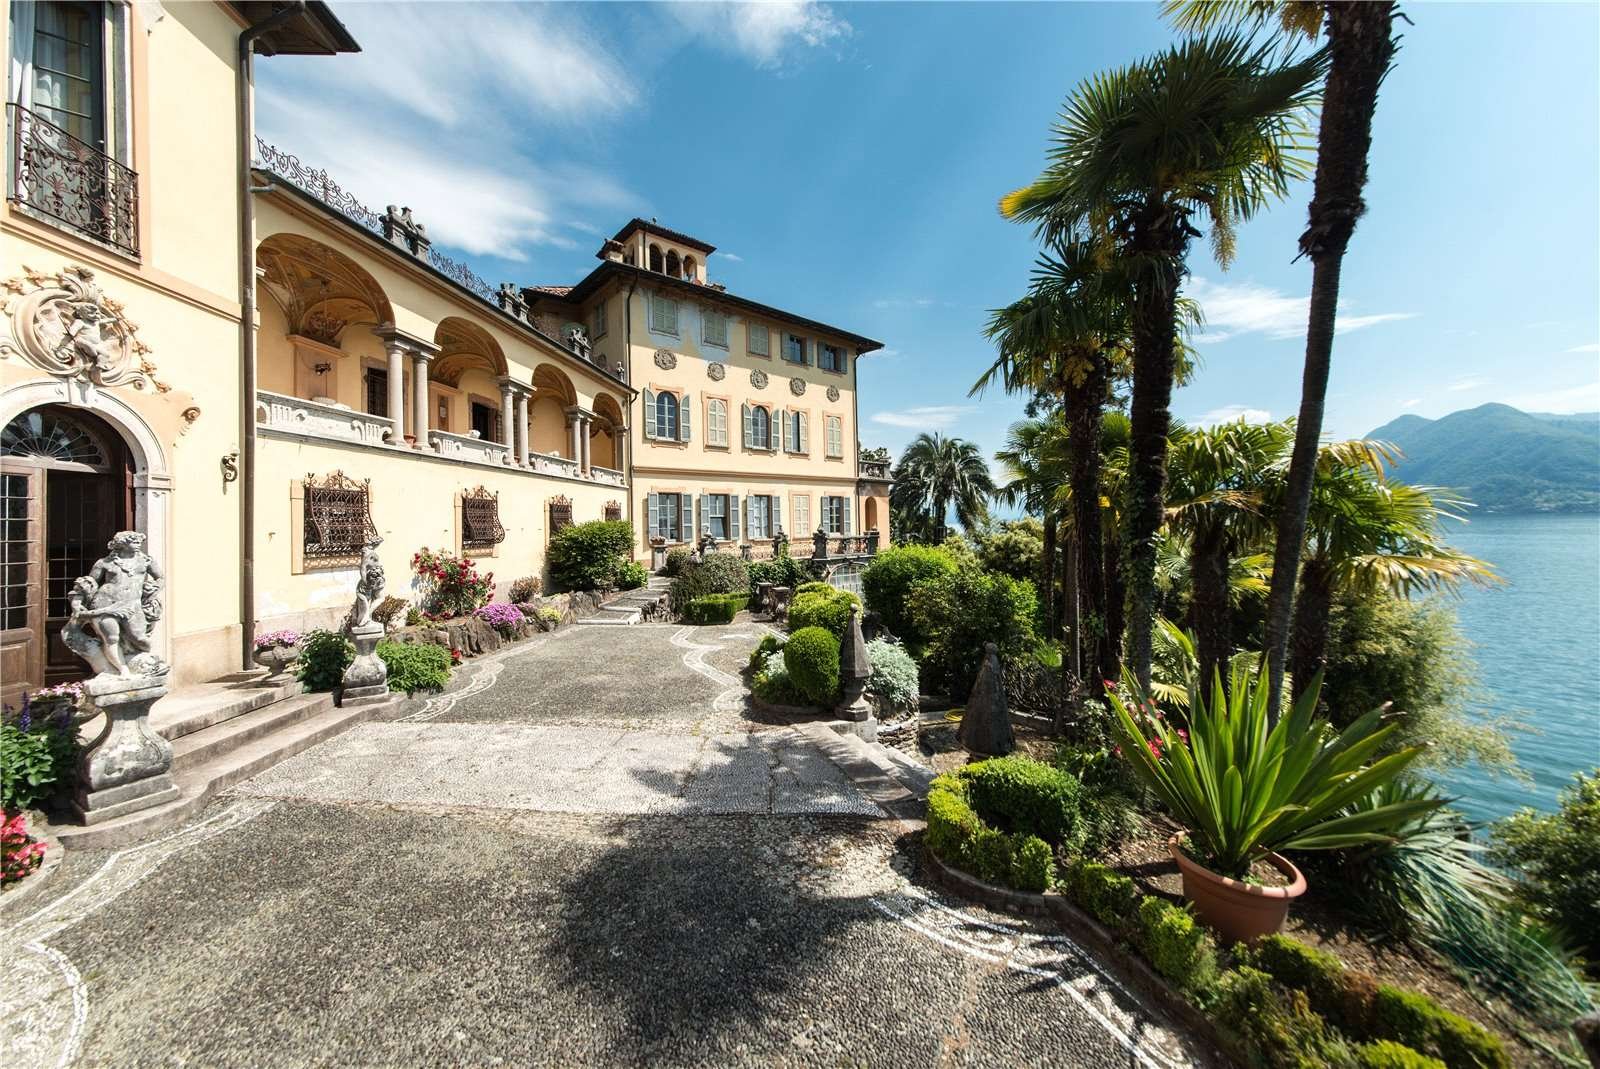 Francis YorkVilla L'Eremitaggio: Historic Villa On Lake Maggiore 3.jpg